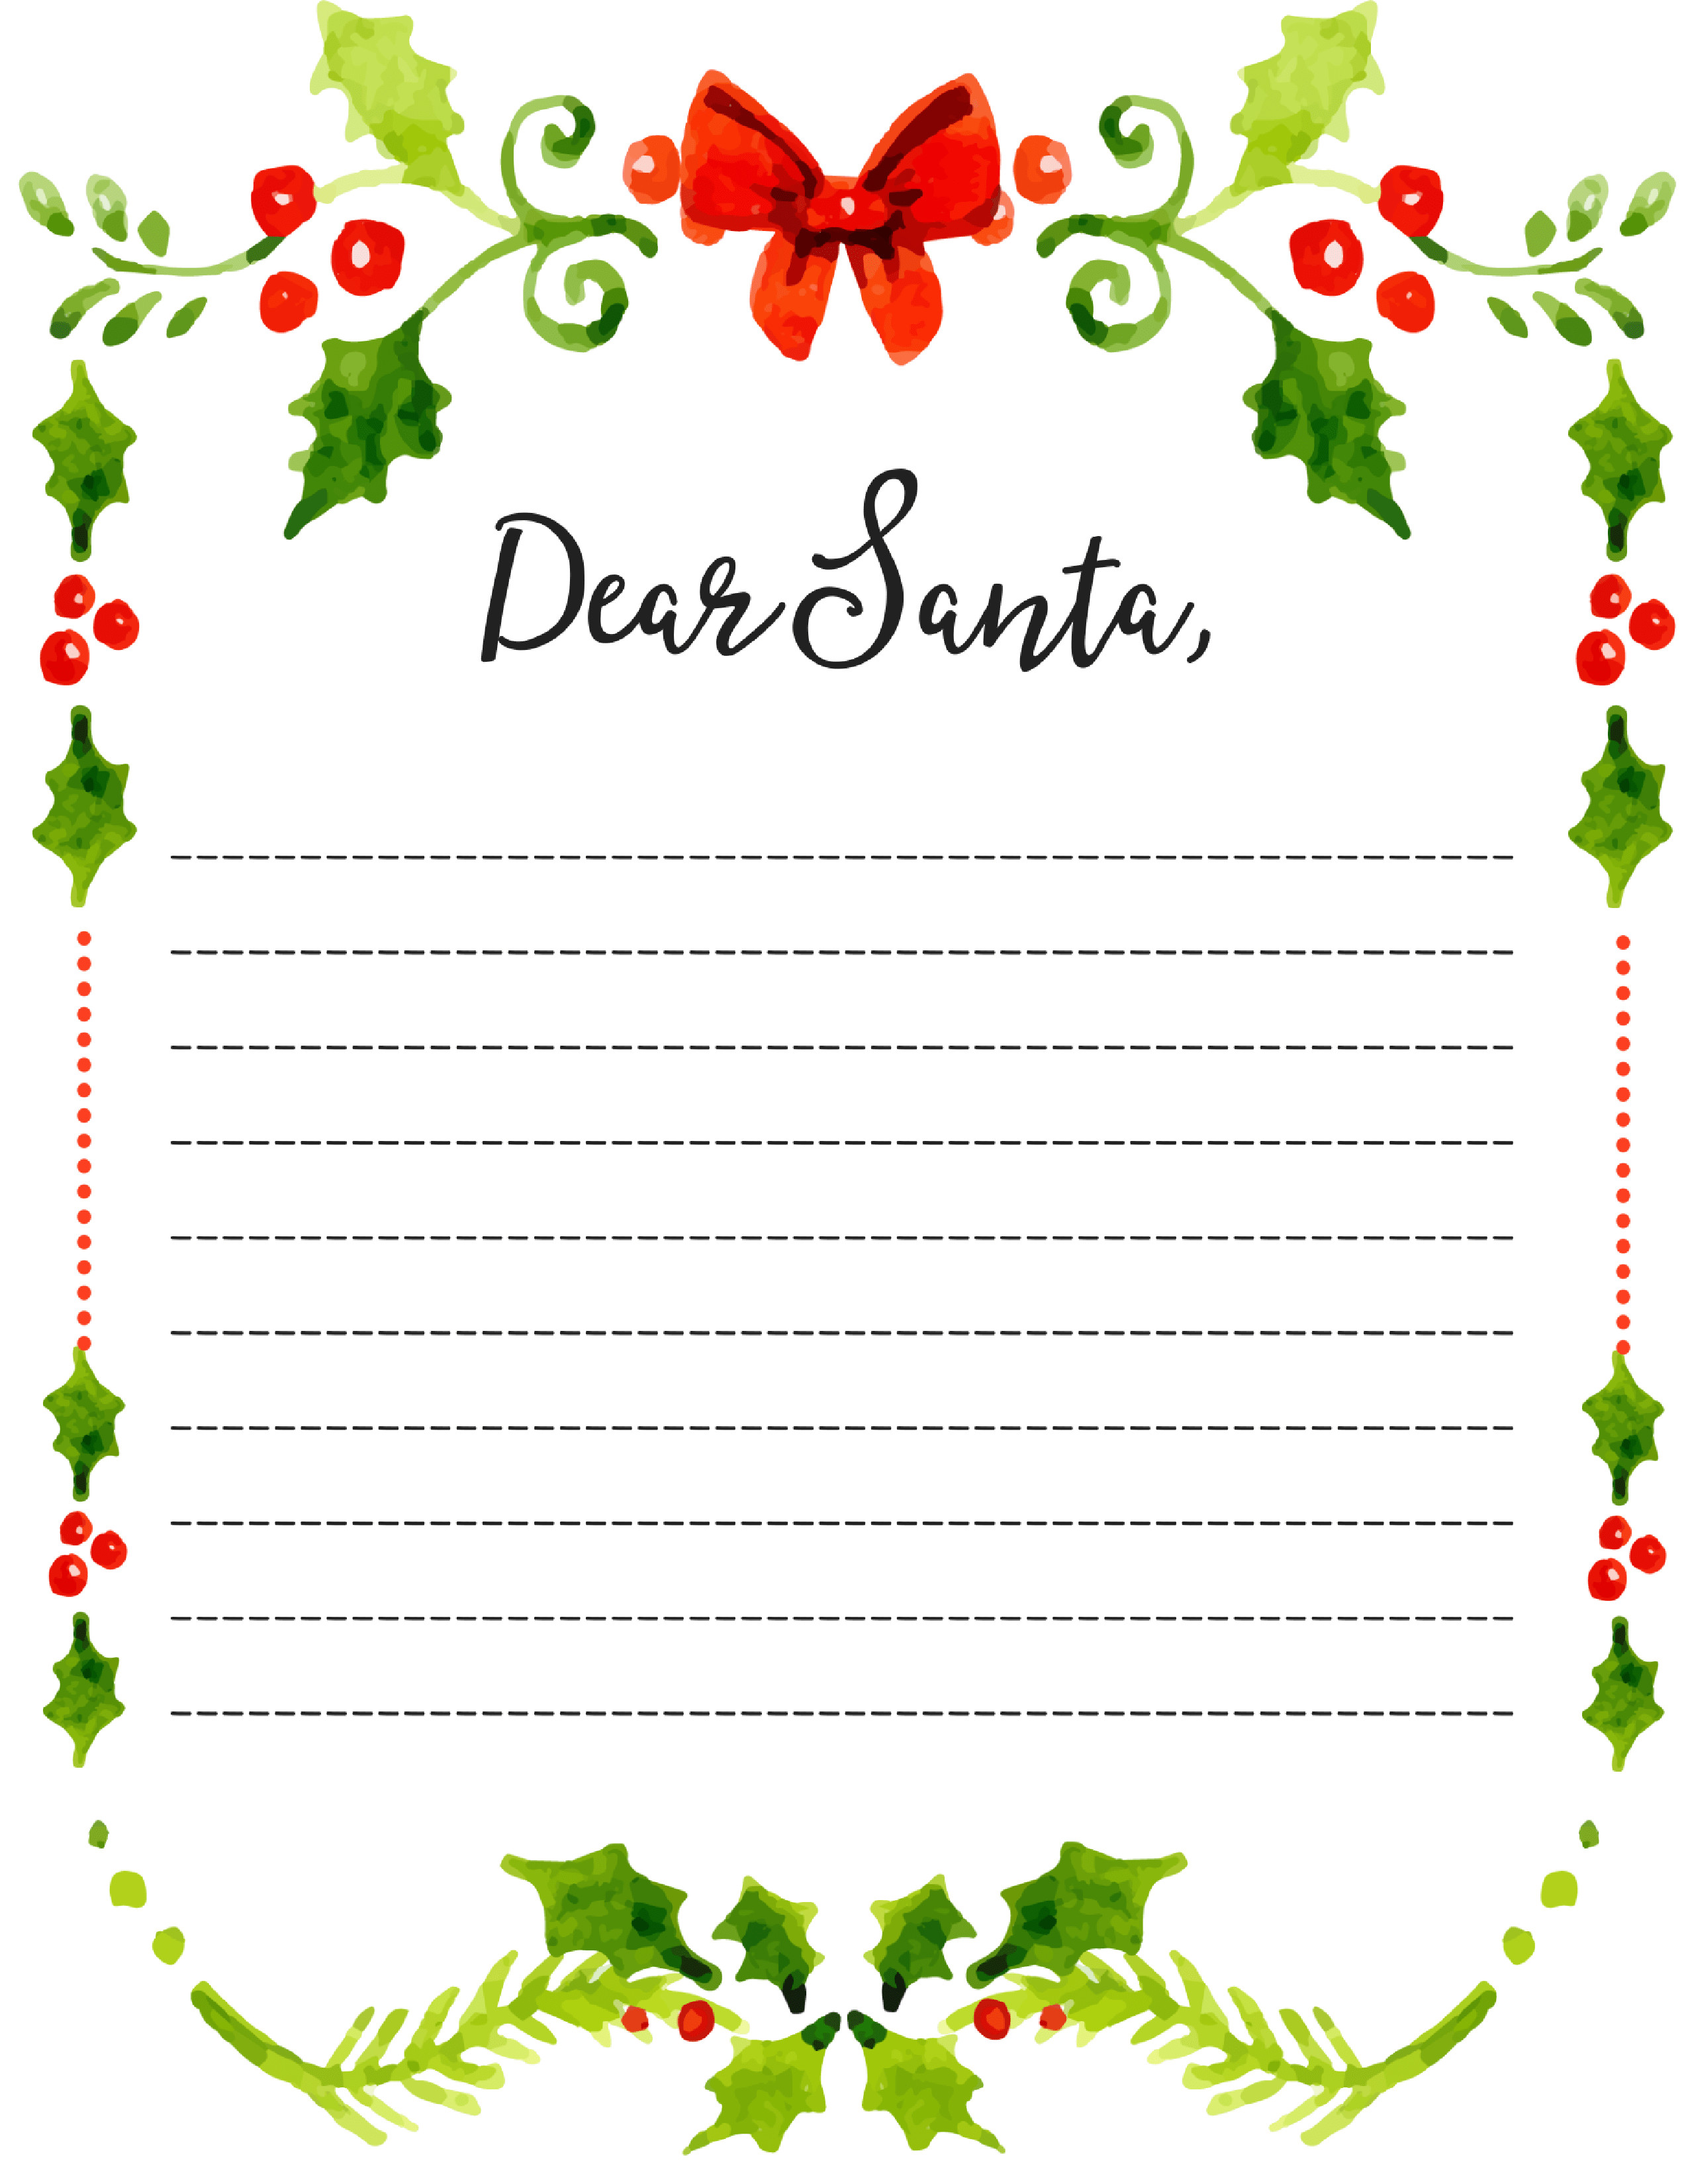 Dear Santa Fill In Letter Template